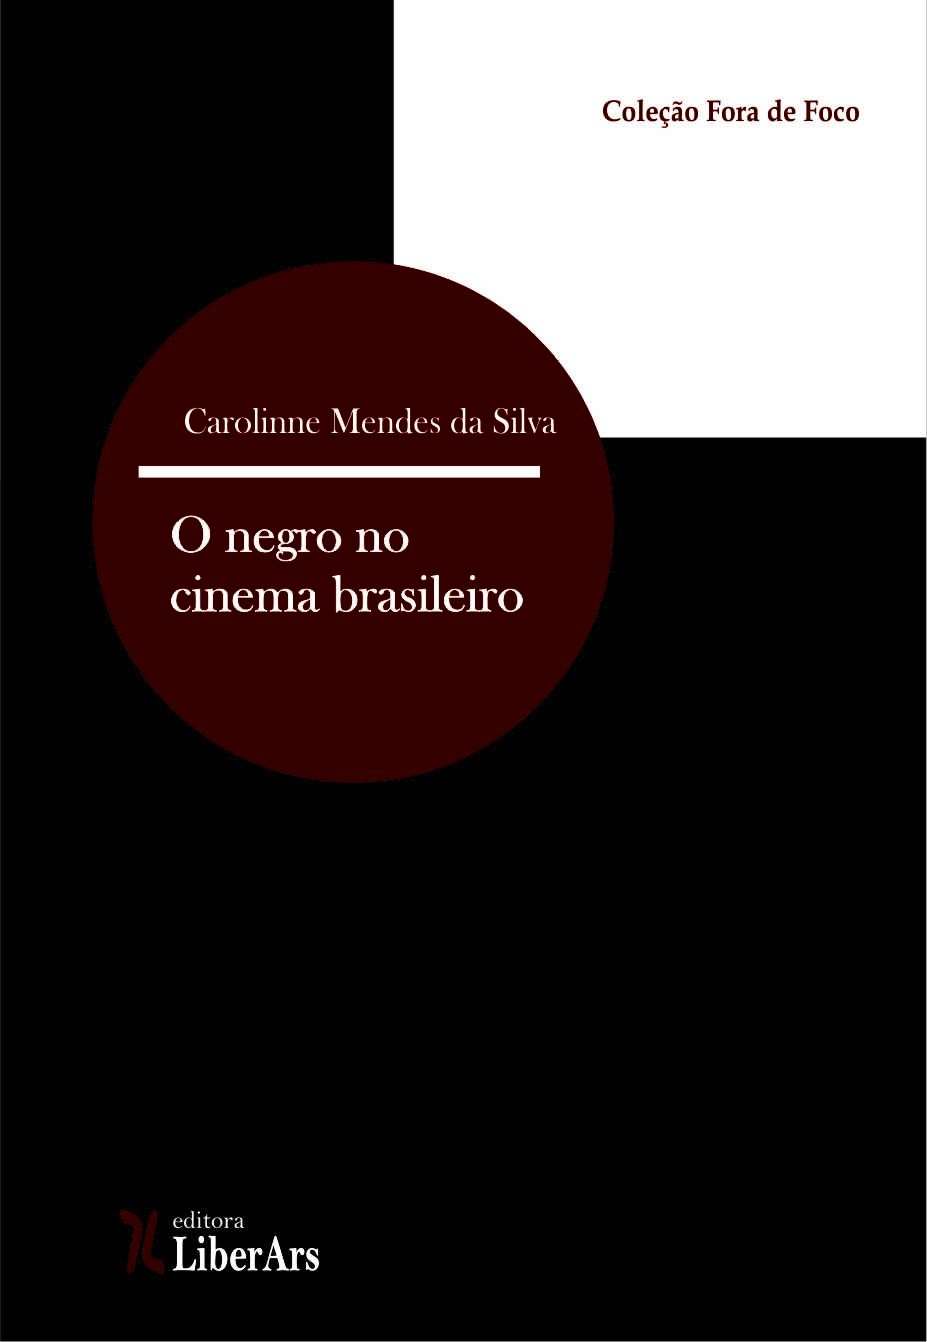 Imprensa negra na década de 1930, A: Frente Negra Brasileira e o Jornal A  Voz da Raça - um instrumento de mobilização e